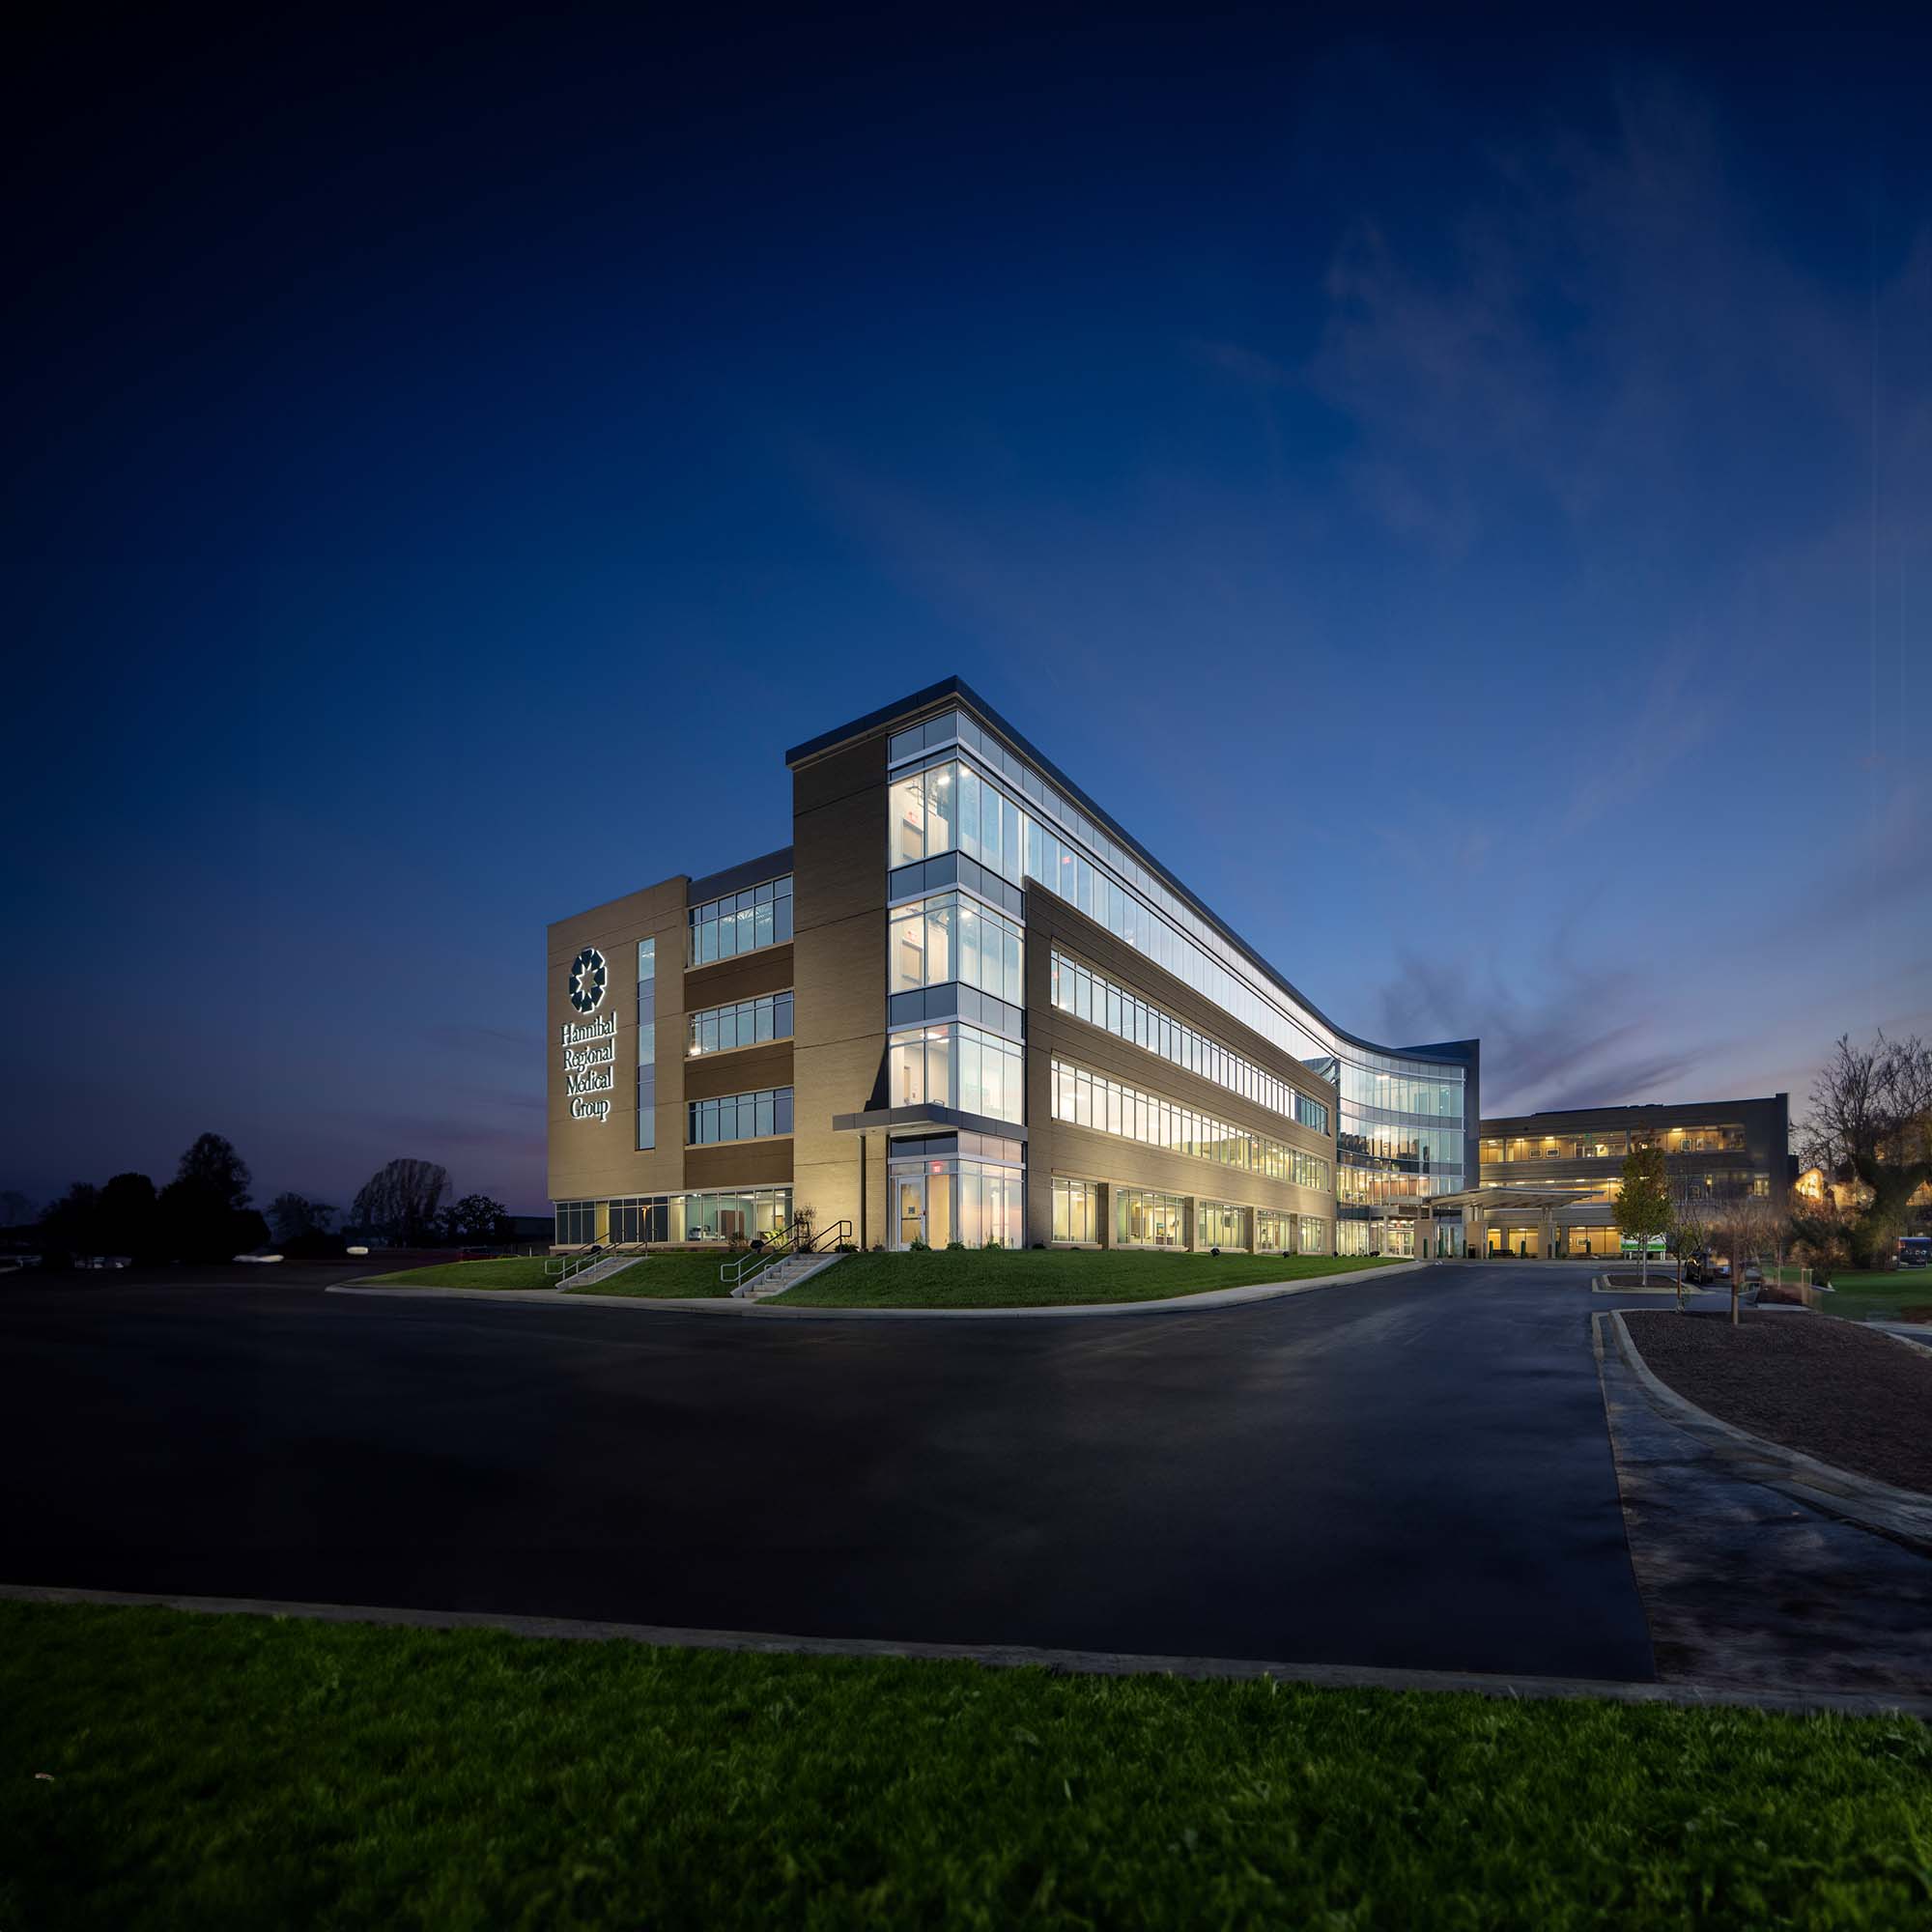 Hannibal Regional Hospital & Medical Office Building